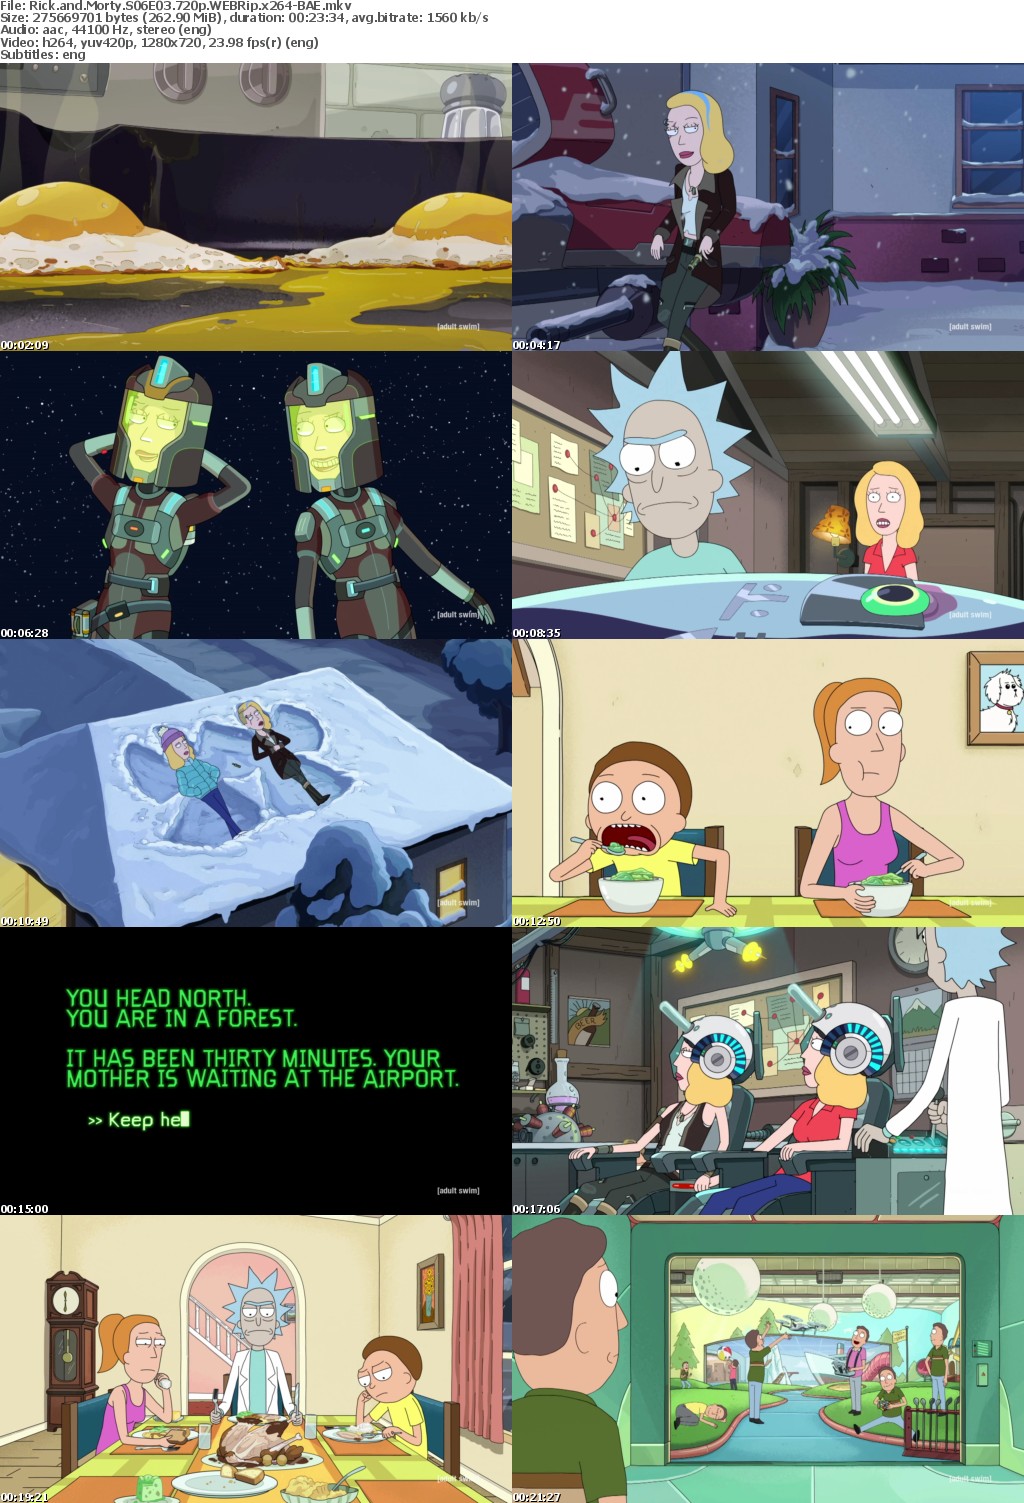 Rick and Morty S06E03 720p WEBRip x264-BAE